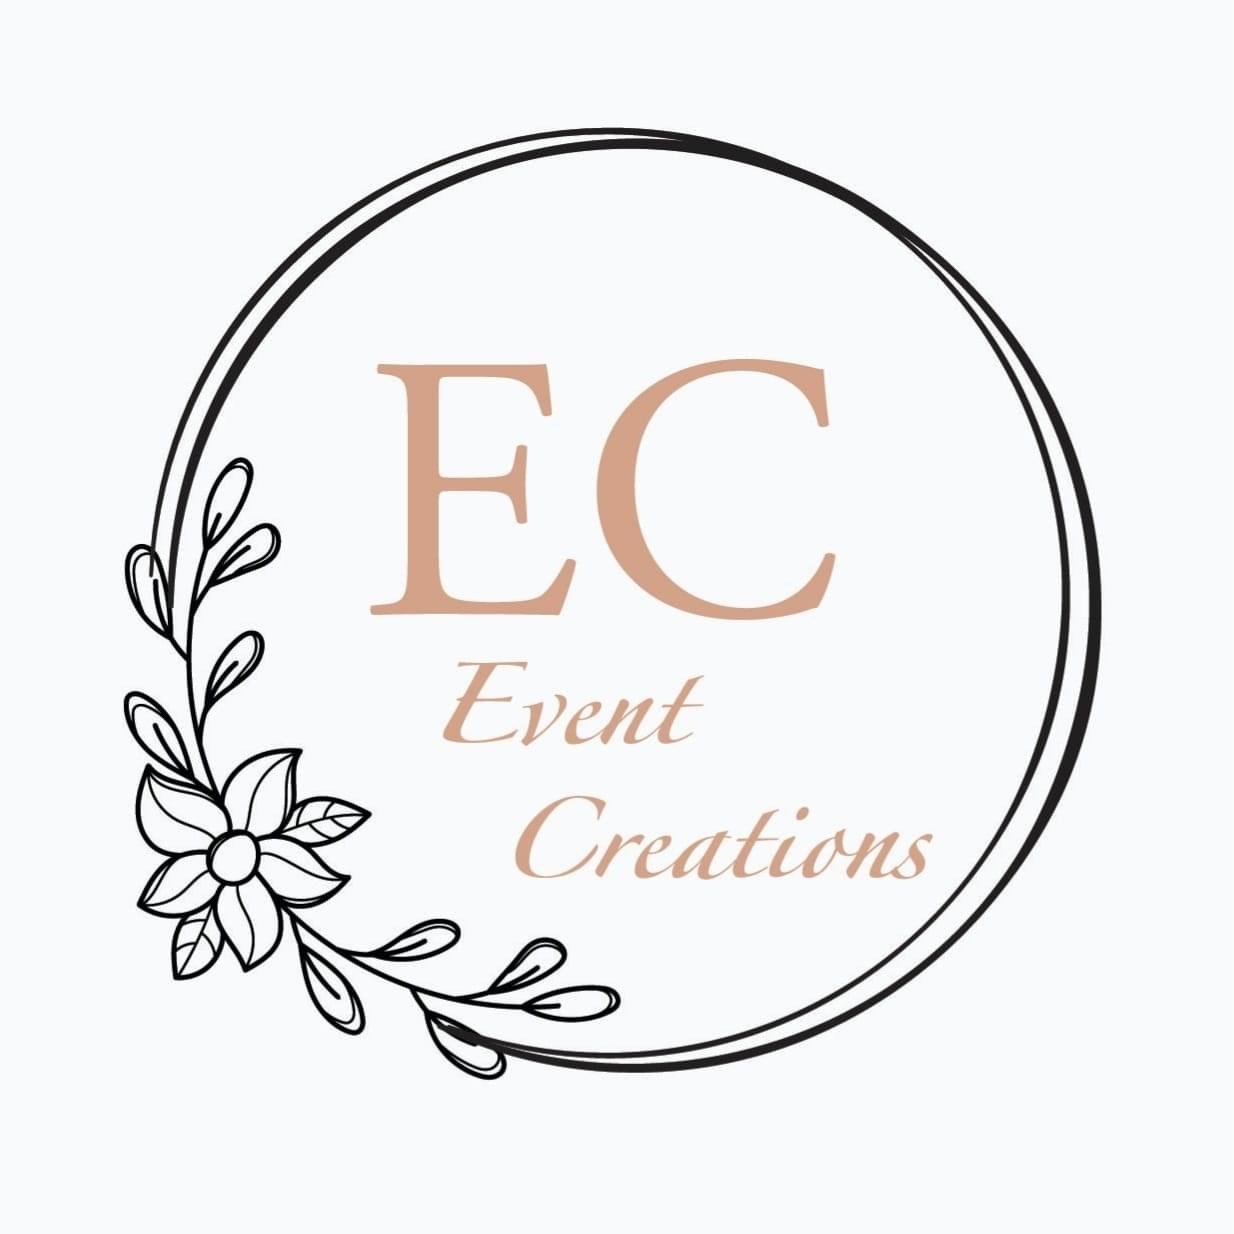 EC Event Creations